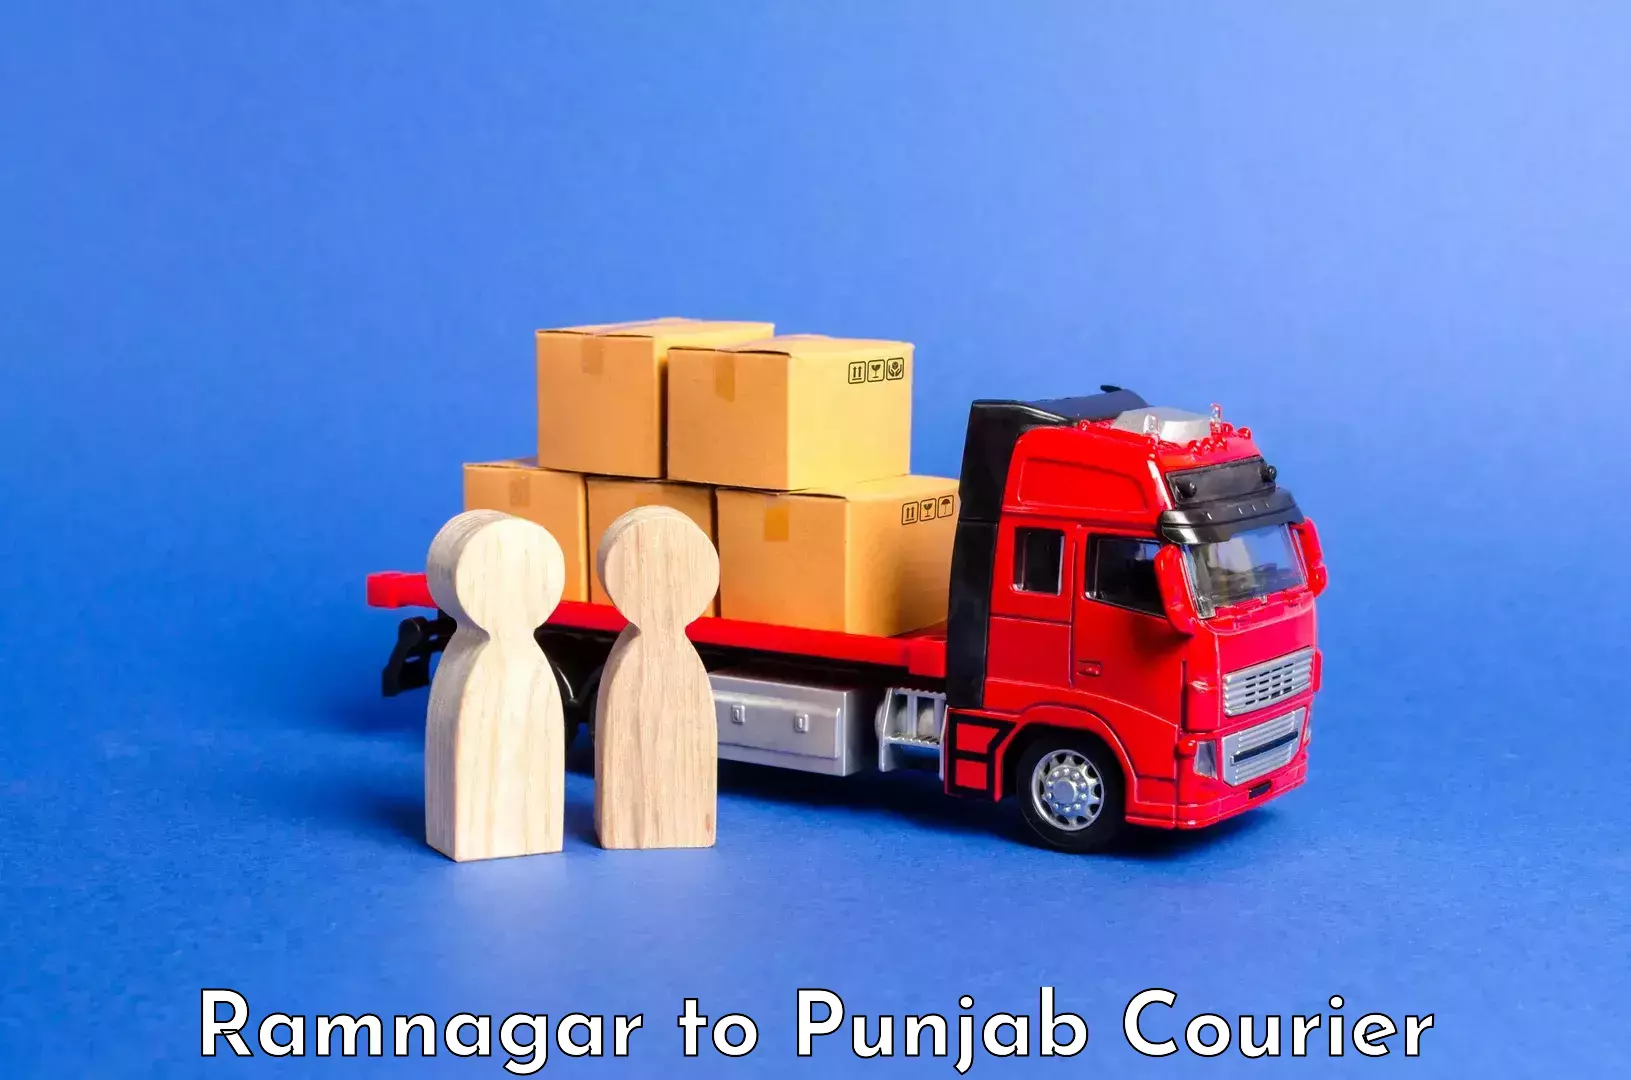 Luggage shipment tracking Ramnagar to Punjab